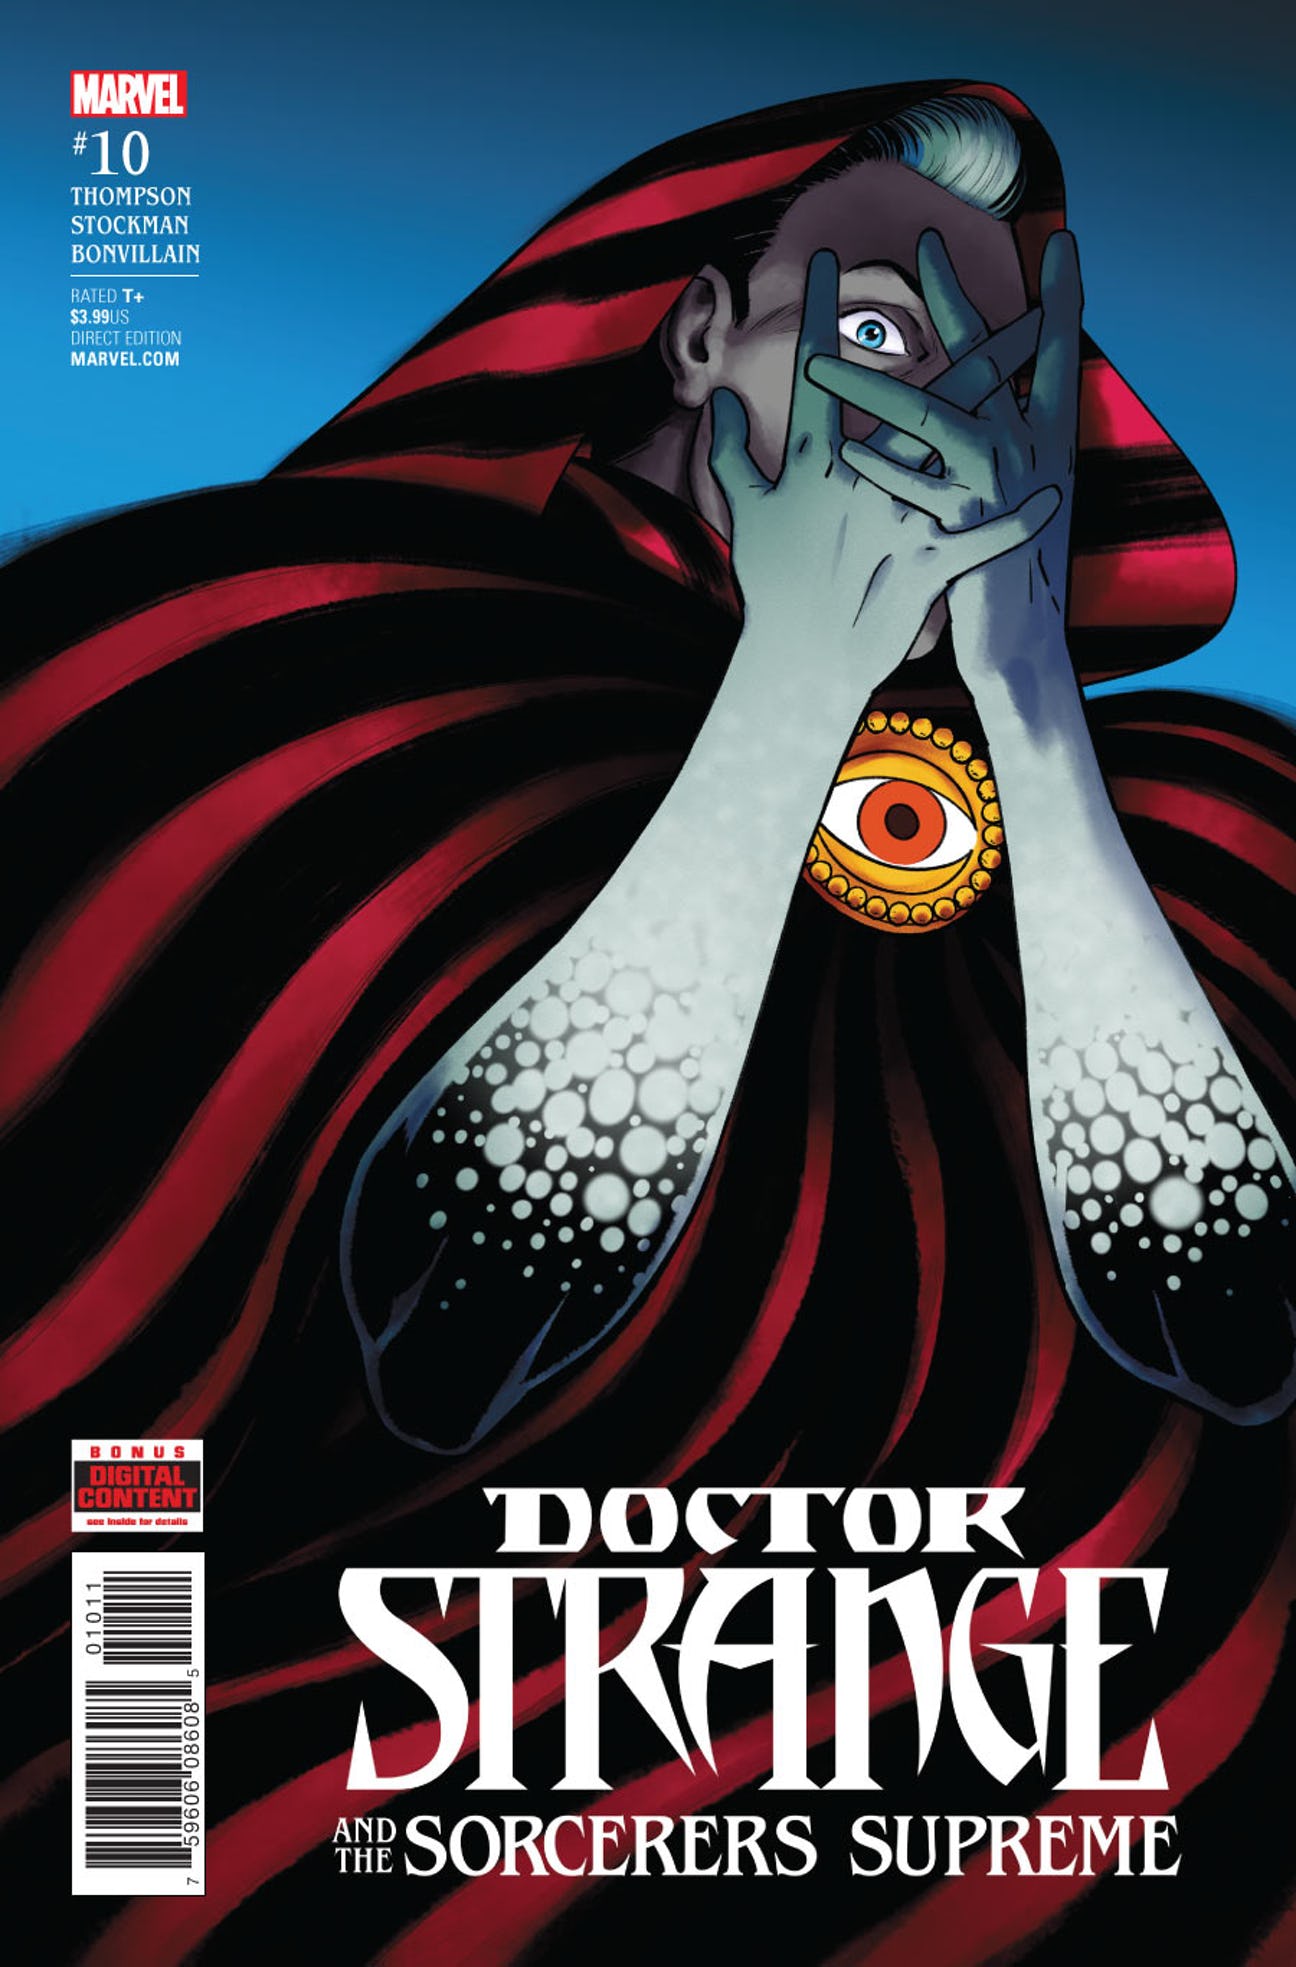 Marvel Doctor Strange The Sorcerer Supreme Bedding Set